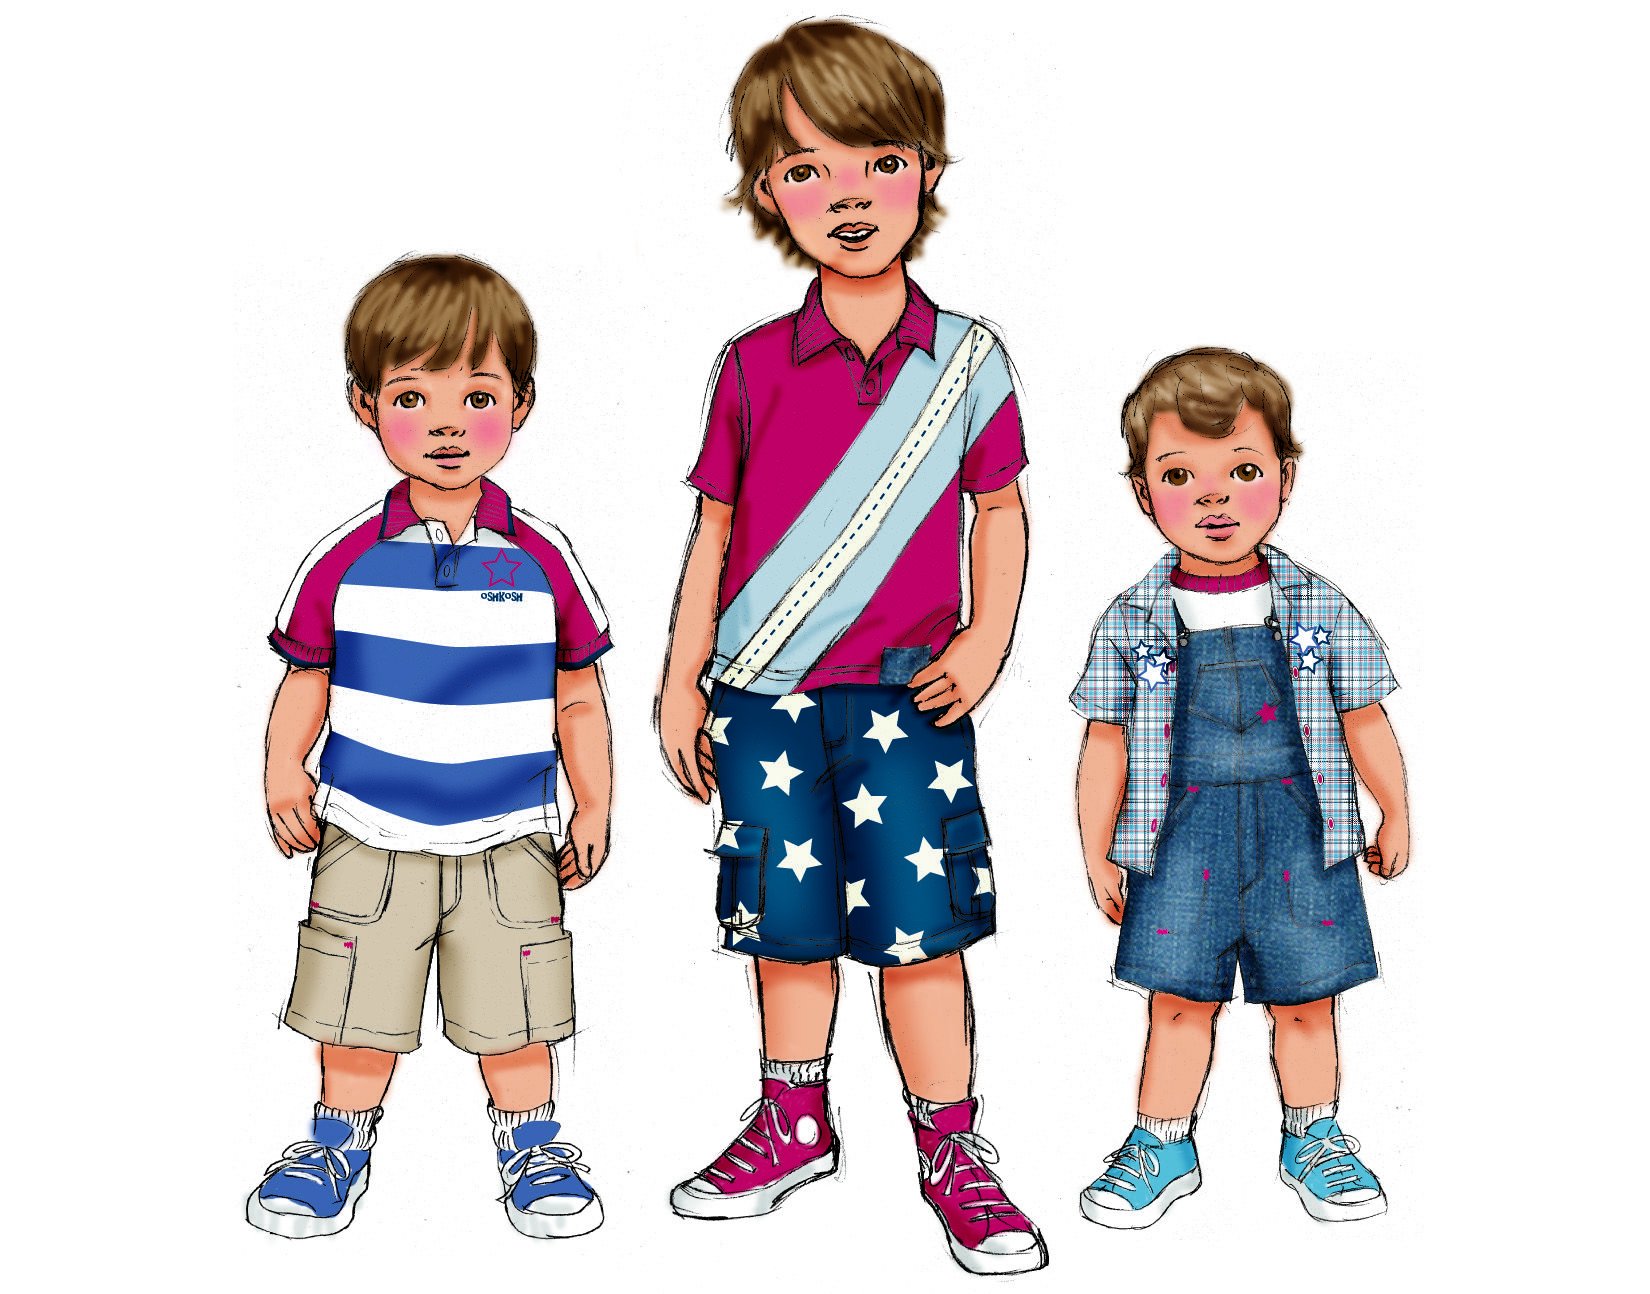 Картинка ребенка одевается. Летняя одежда для дошкольников. Иллюстрации одежды на мальчика. Повседневная одежда картинки для детей. Одежда рисунок для детей.